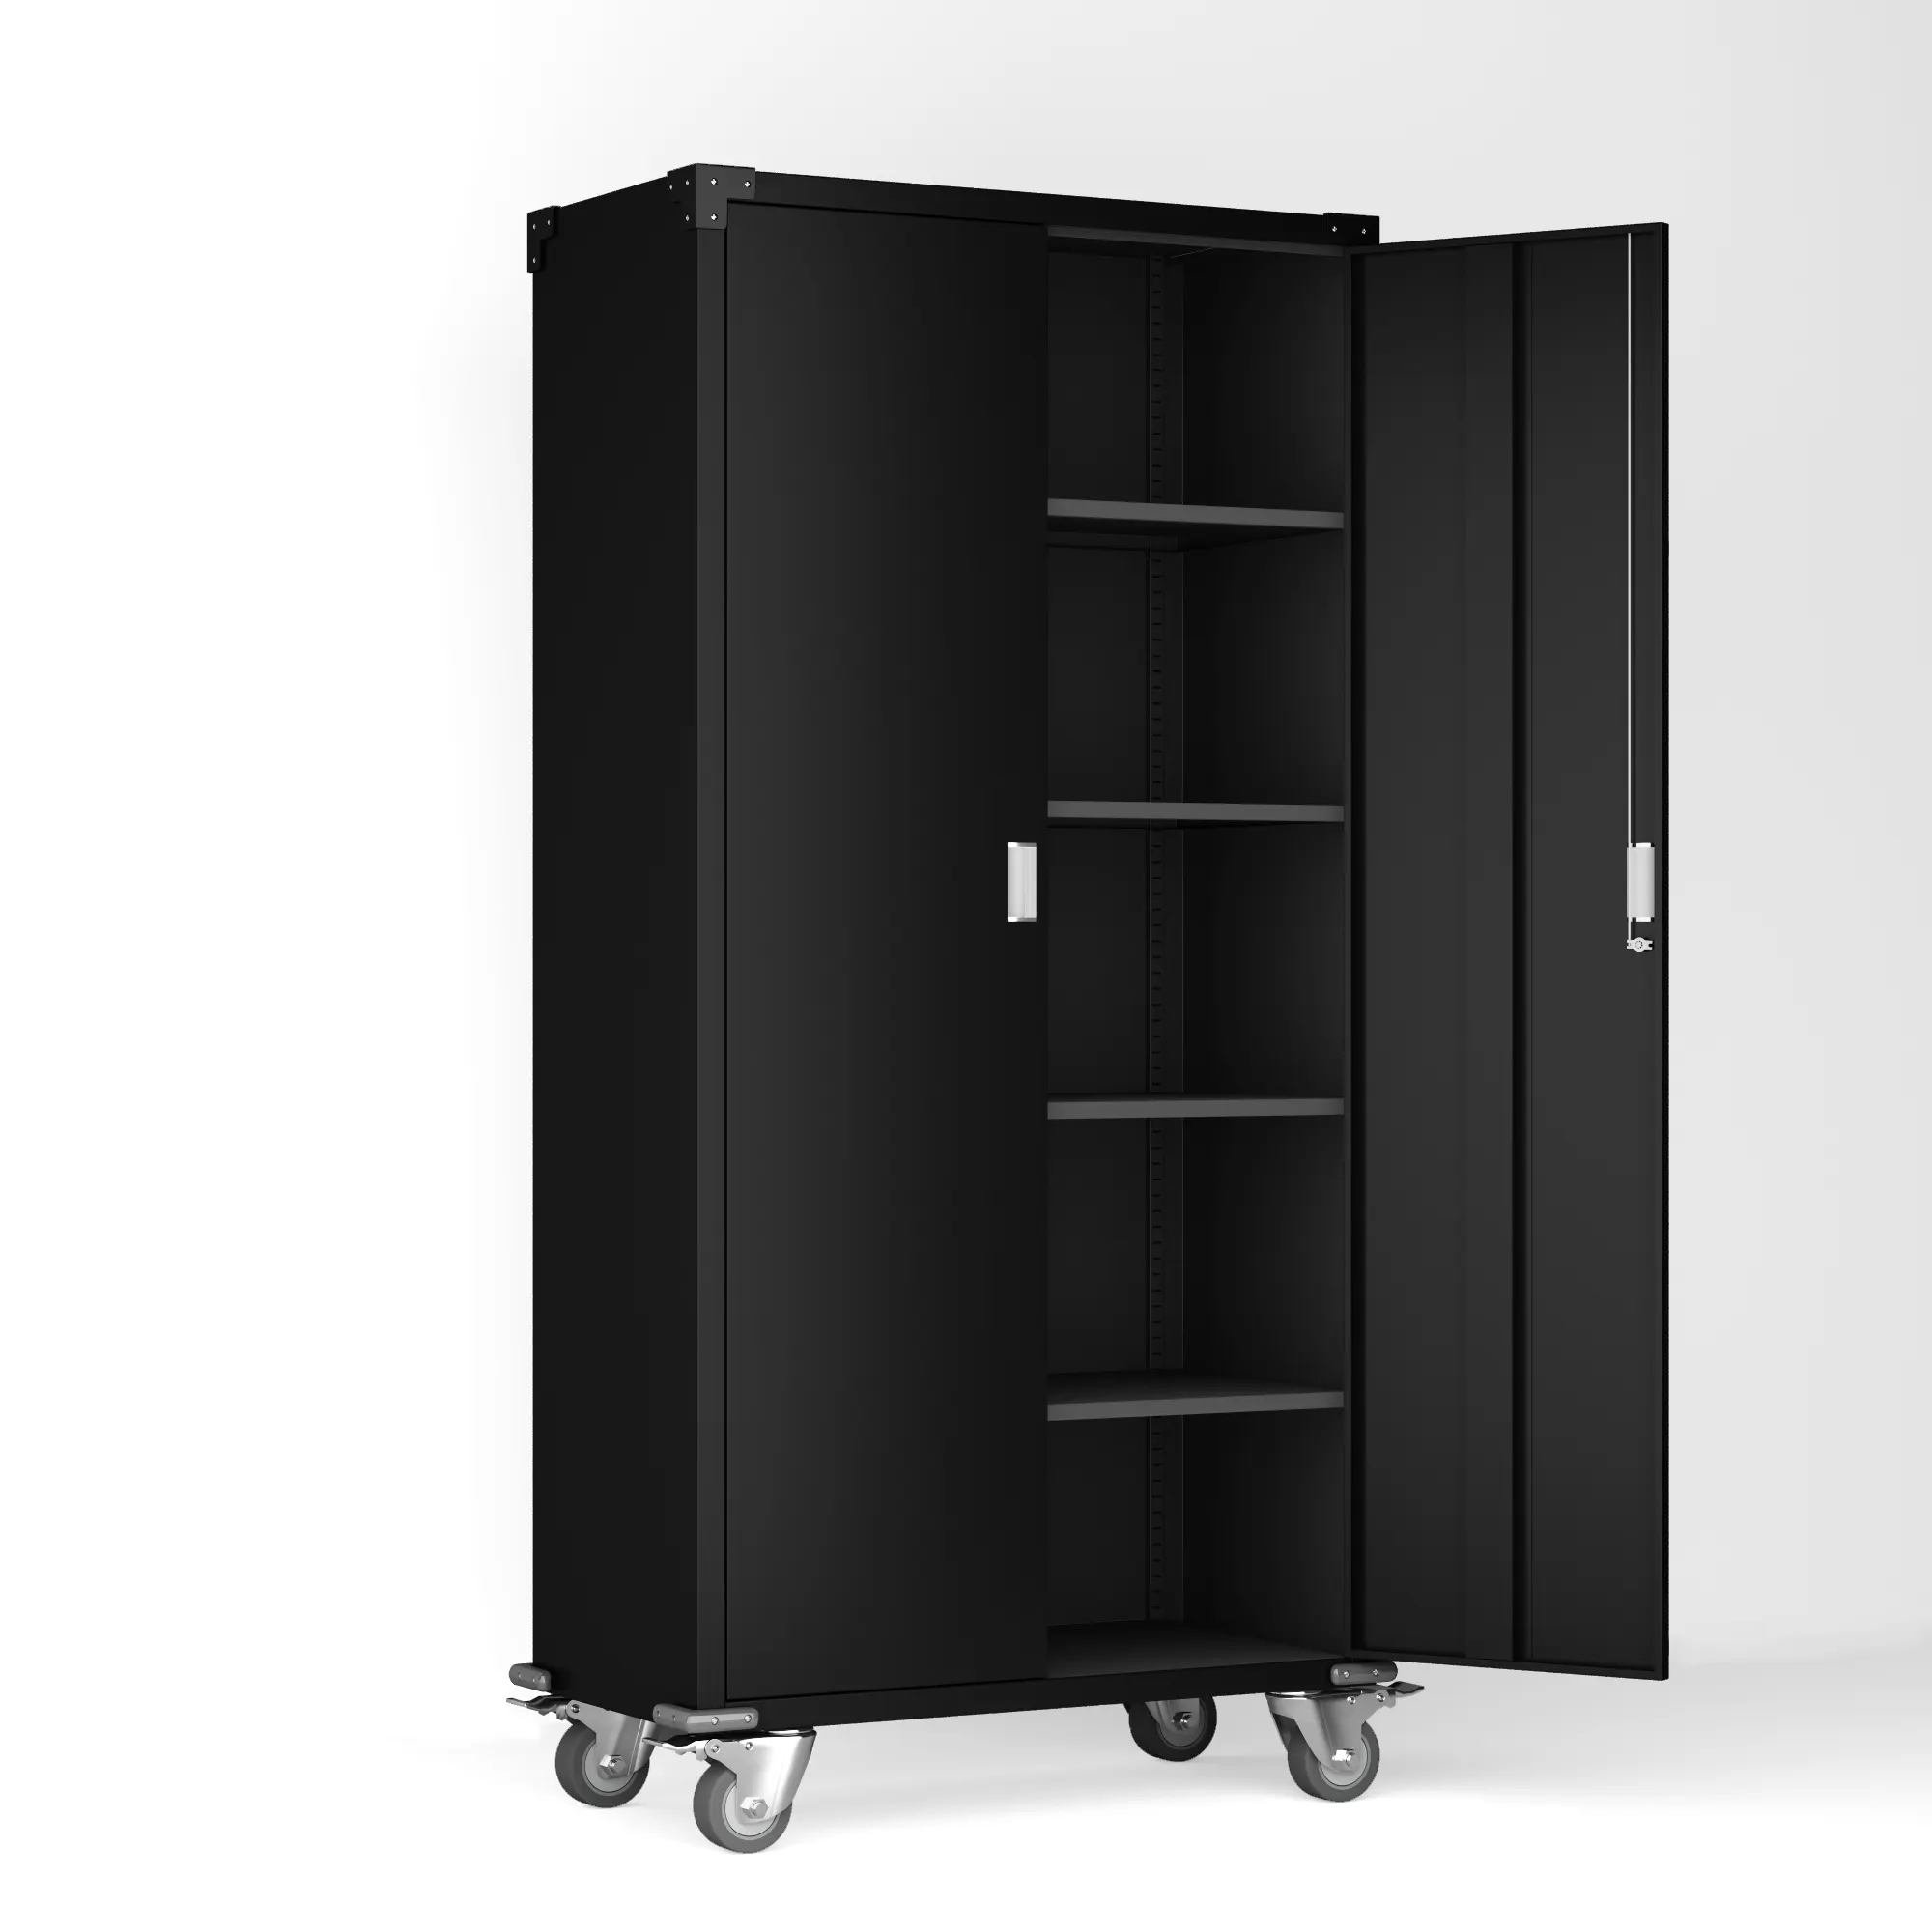 Metal File Storage Cabinet With Door And Shelves Steel 2 Door Garage Heavy Tool Cabinet With 5 Wheels